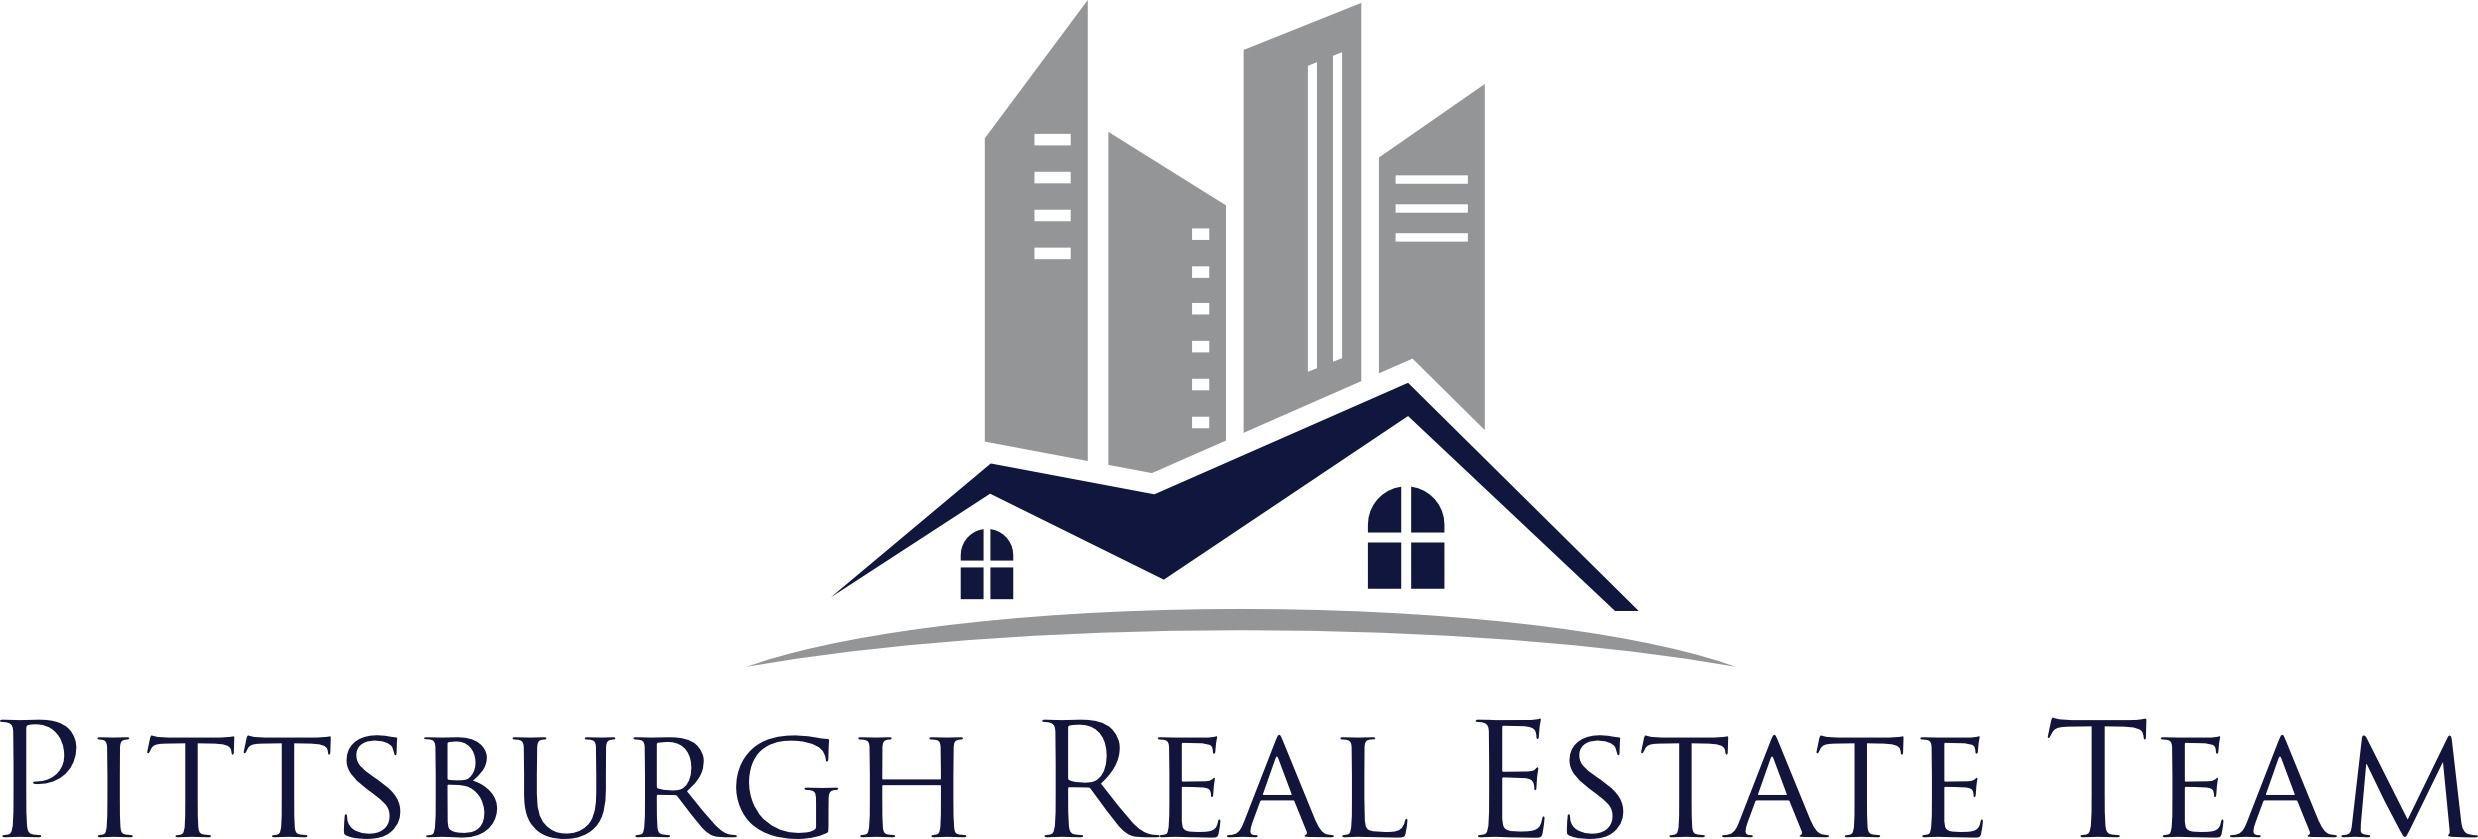 Real Estate Investor Logo - real estate investor logo estate investment